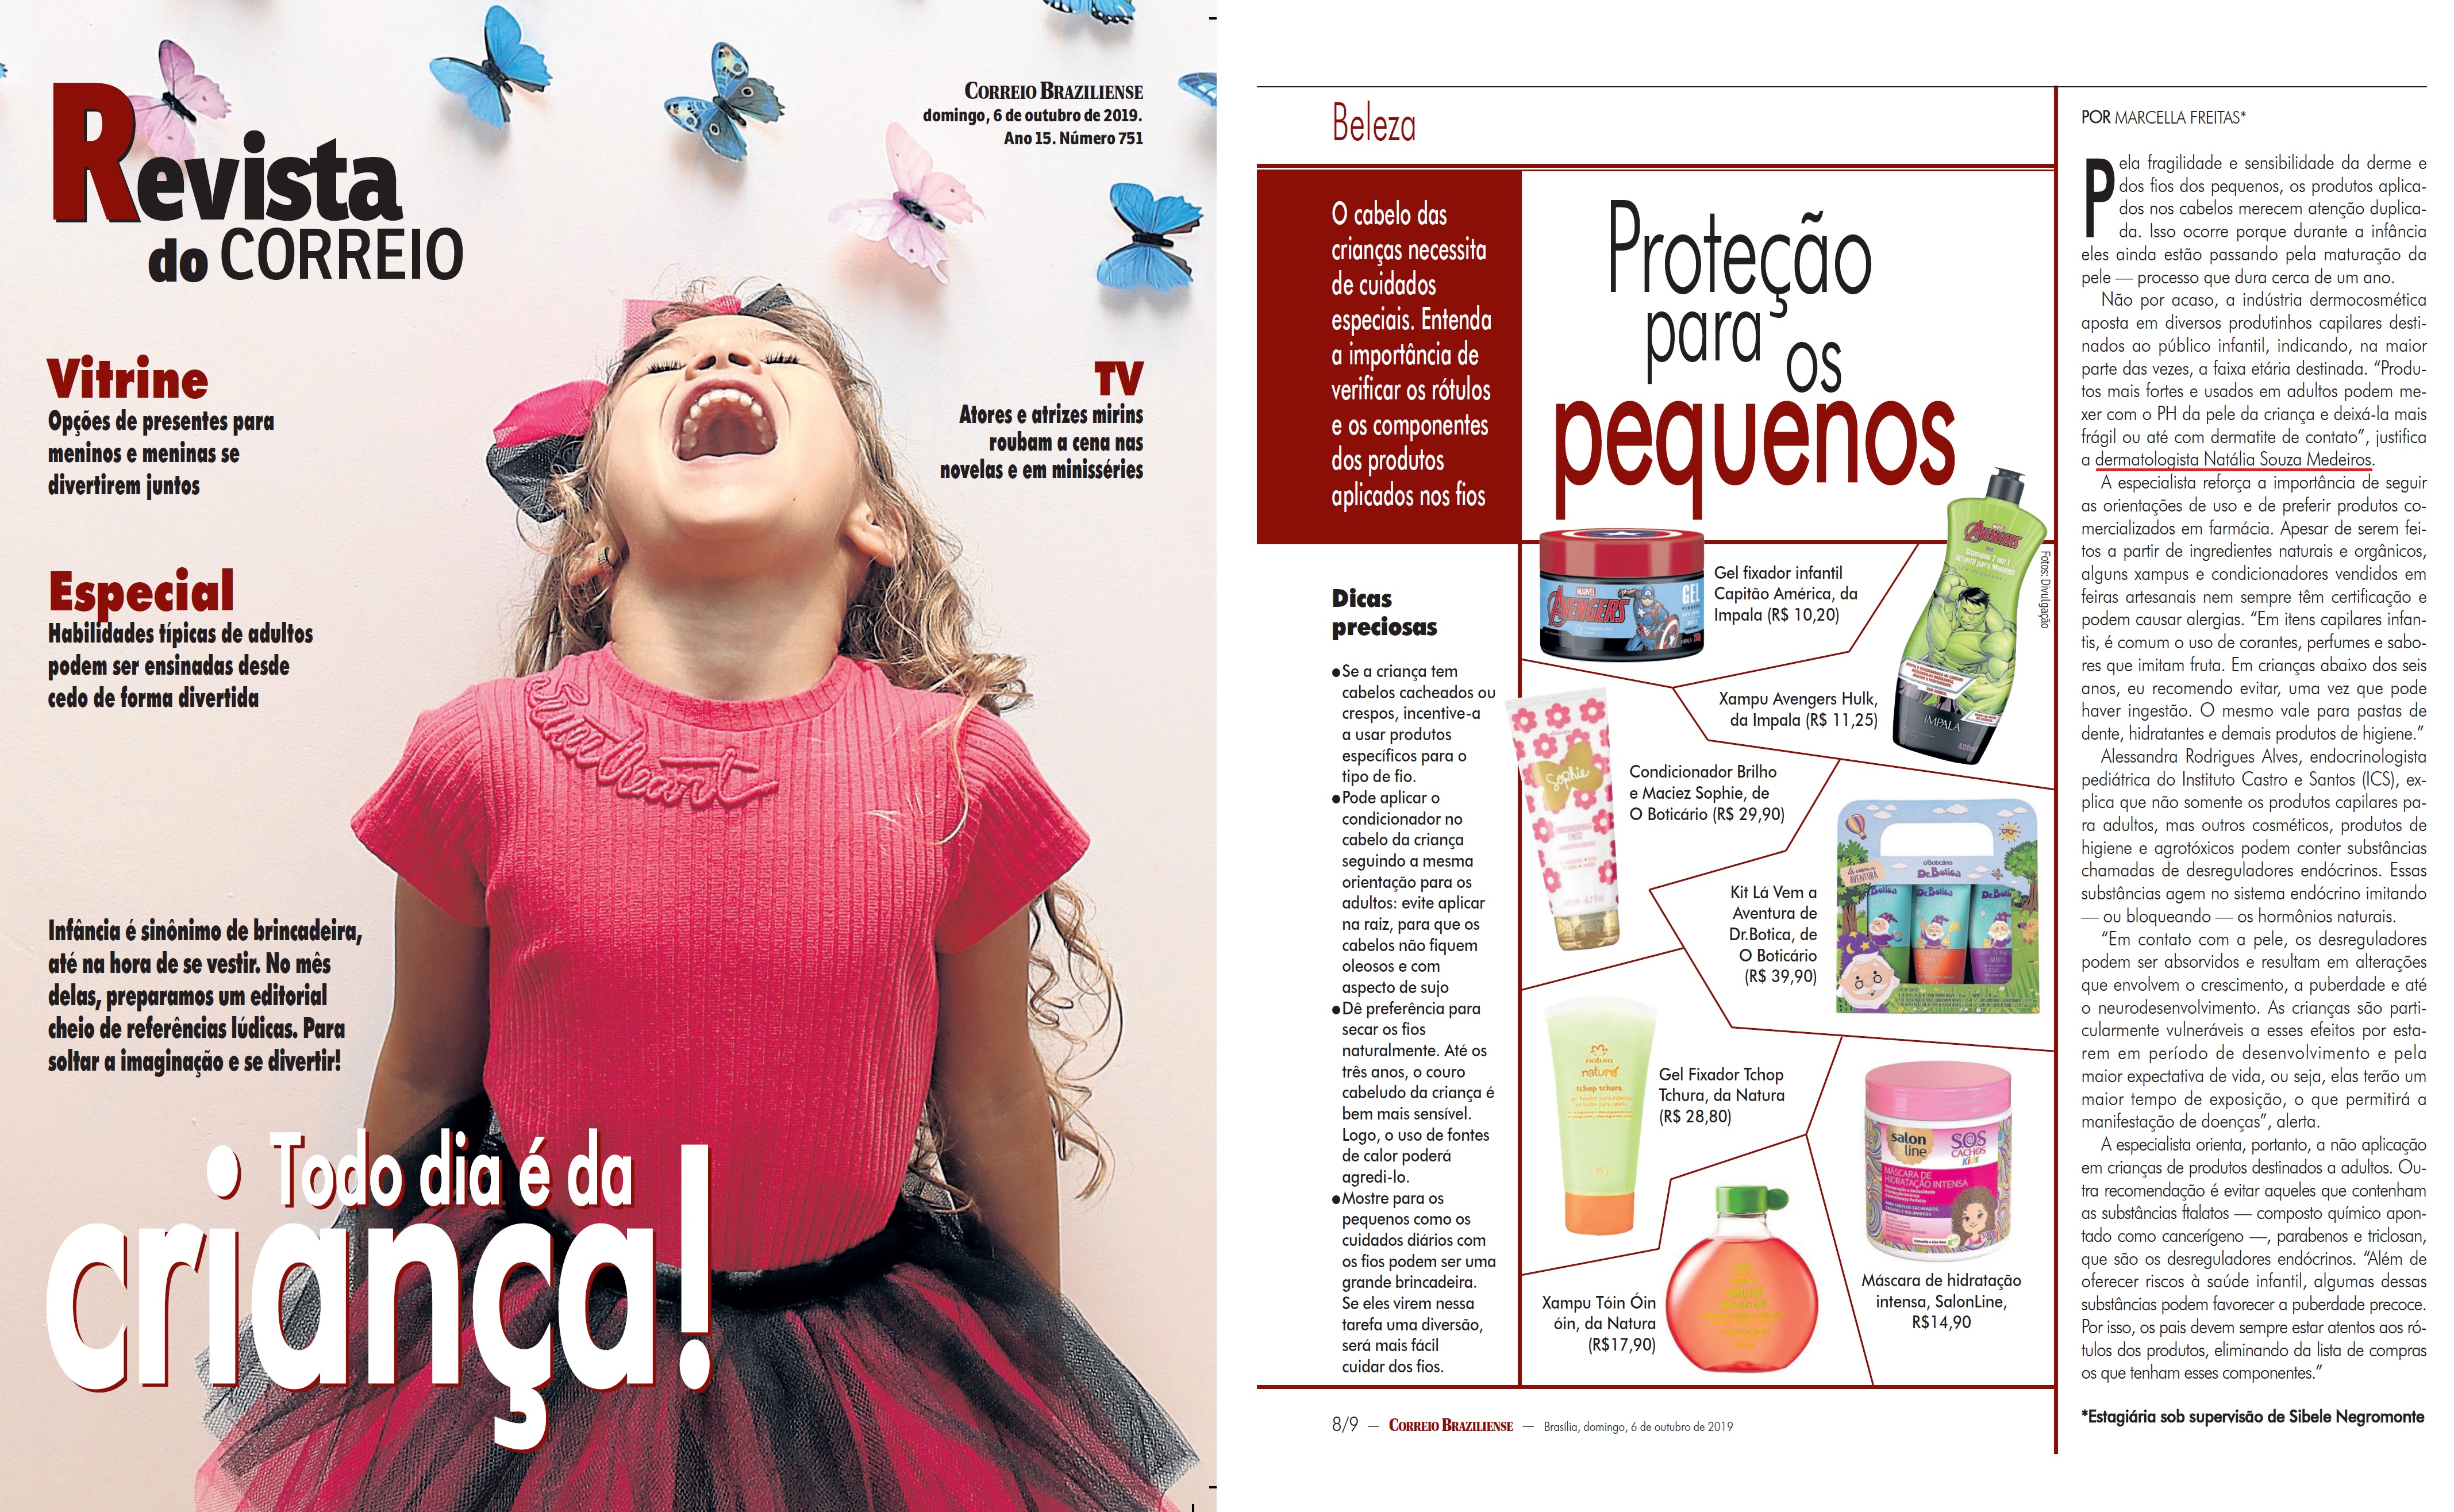 Revista do Correio - Dra. Natália Souza HSLS - 07-10-2019